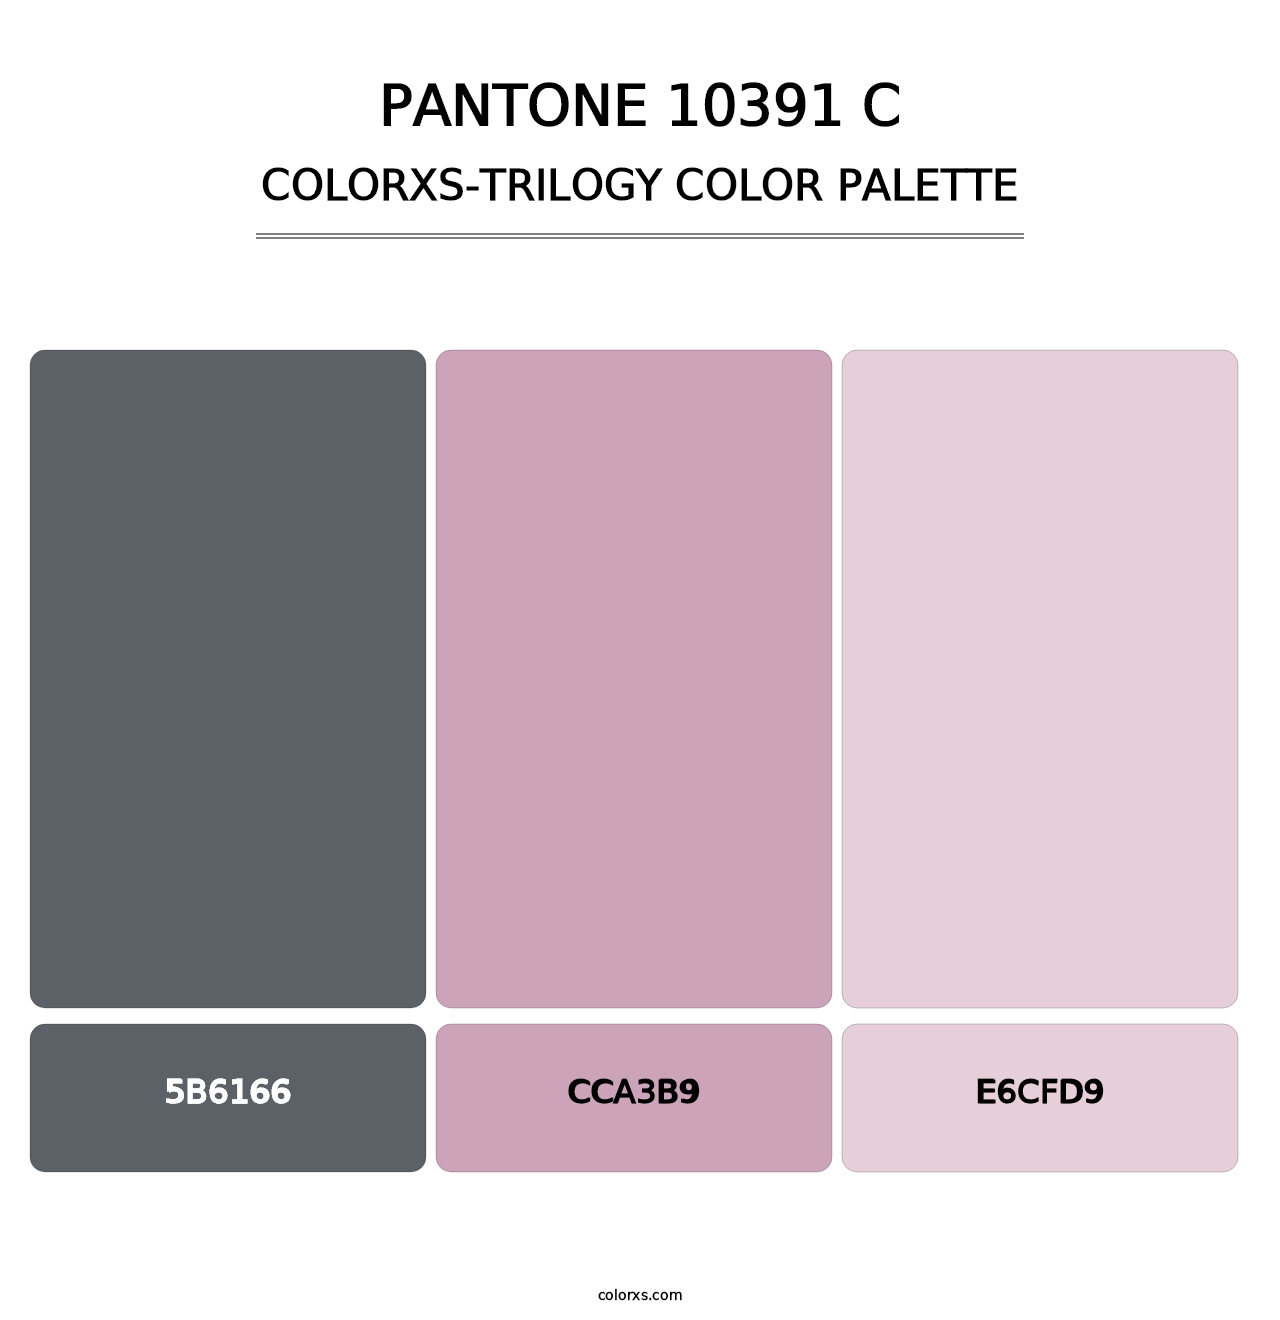 PANTONE 10391 C - Colorxs Trilogy Palette